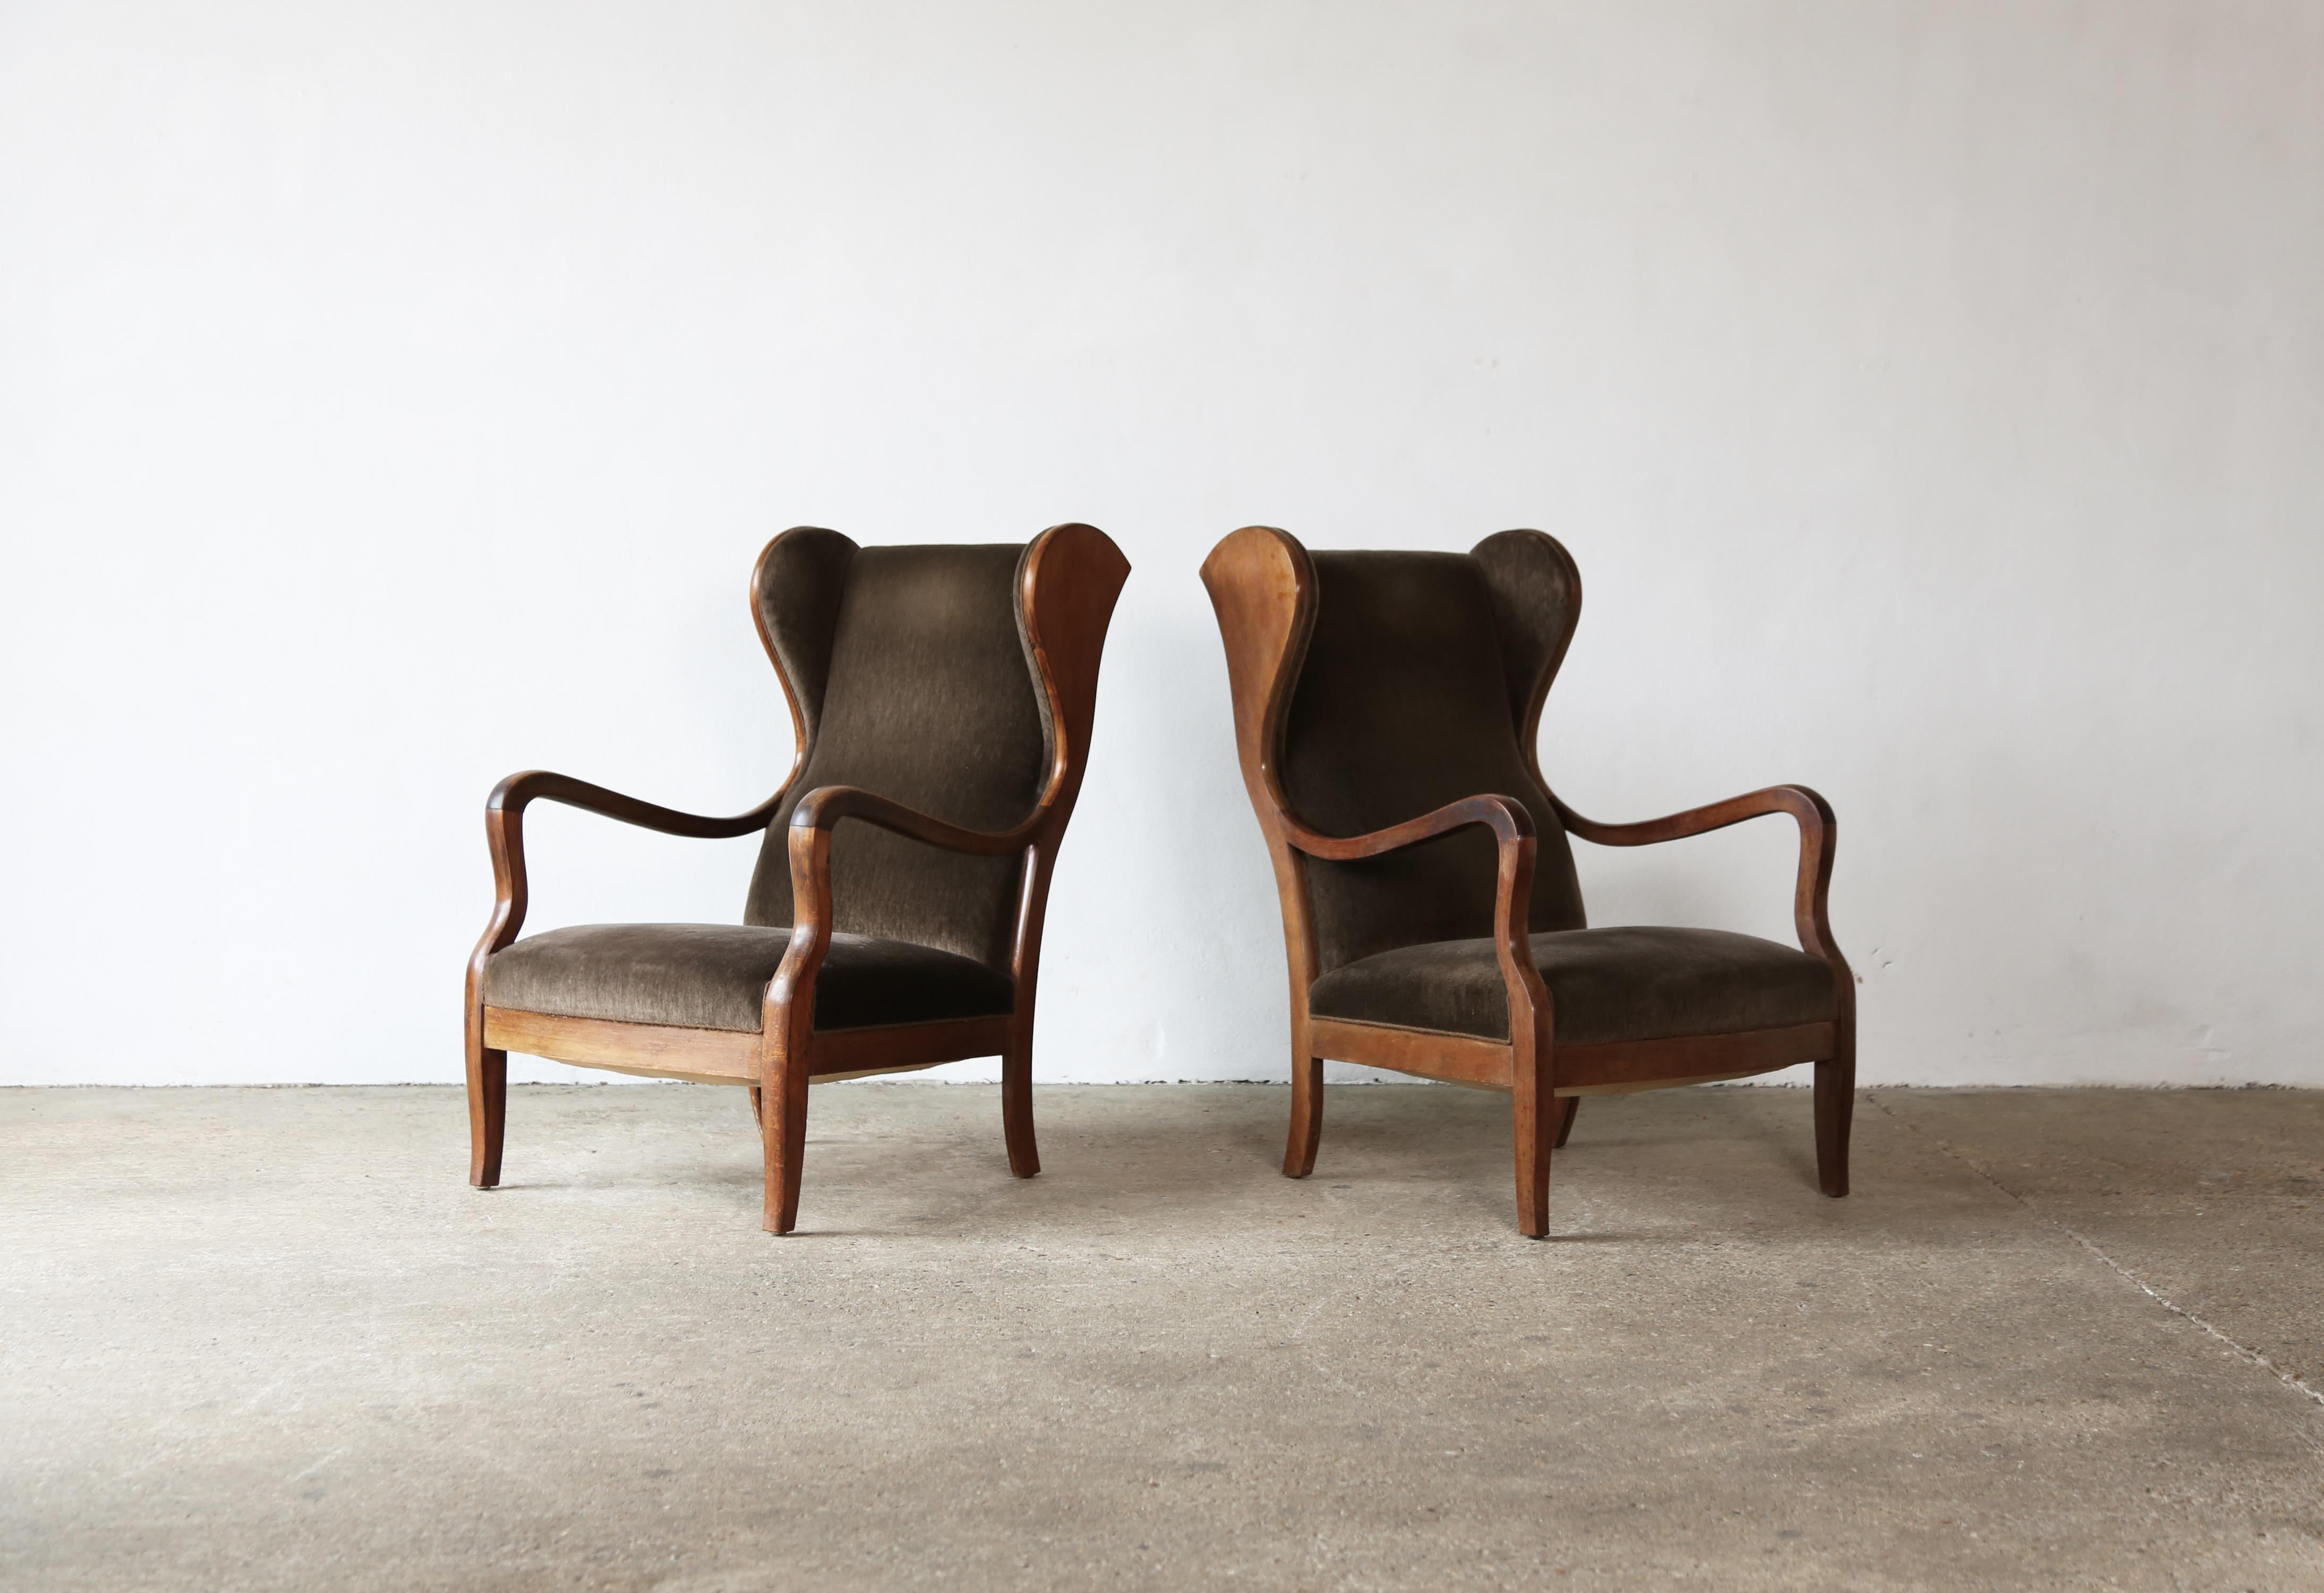 Paire de chaises originales de Frits Henningsen, Danemark, années 1940. Conçu et produit par Frits Henningsen, Copenhague. Les chaises ont vraisemblablement été retapissées à un moment donné de leur histoire, mais il est facile de les recouvrir d'un